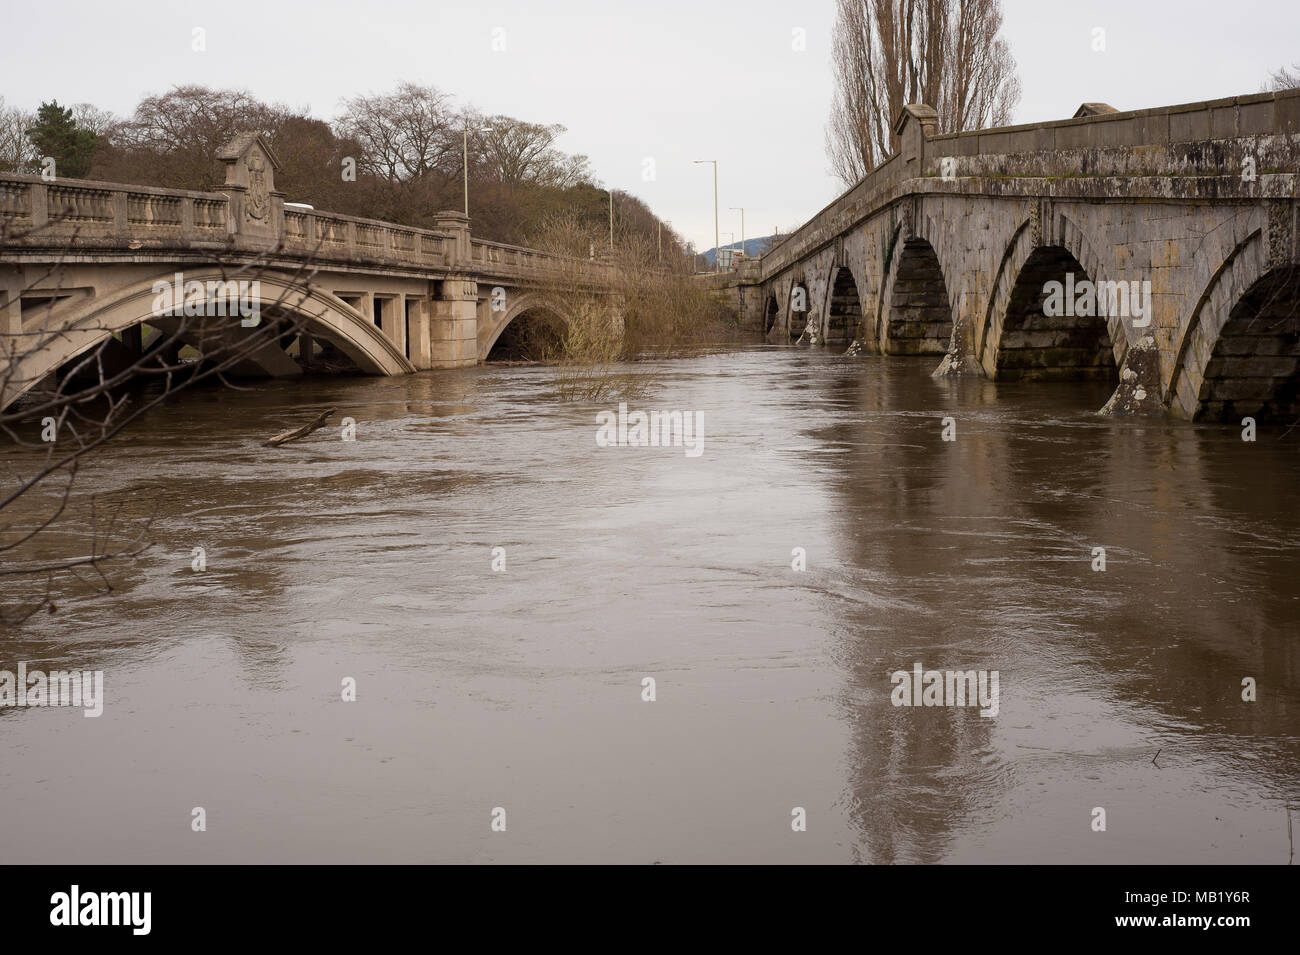 Passerelle historique du 18ème siècle et 20ème siècle pont-route à Atcham, Shropshire, Angleterre sur la rivière Severn inondées au printemps Banque D'Images